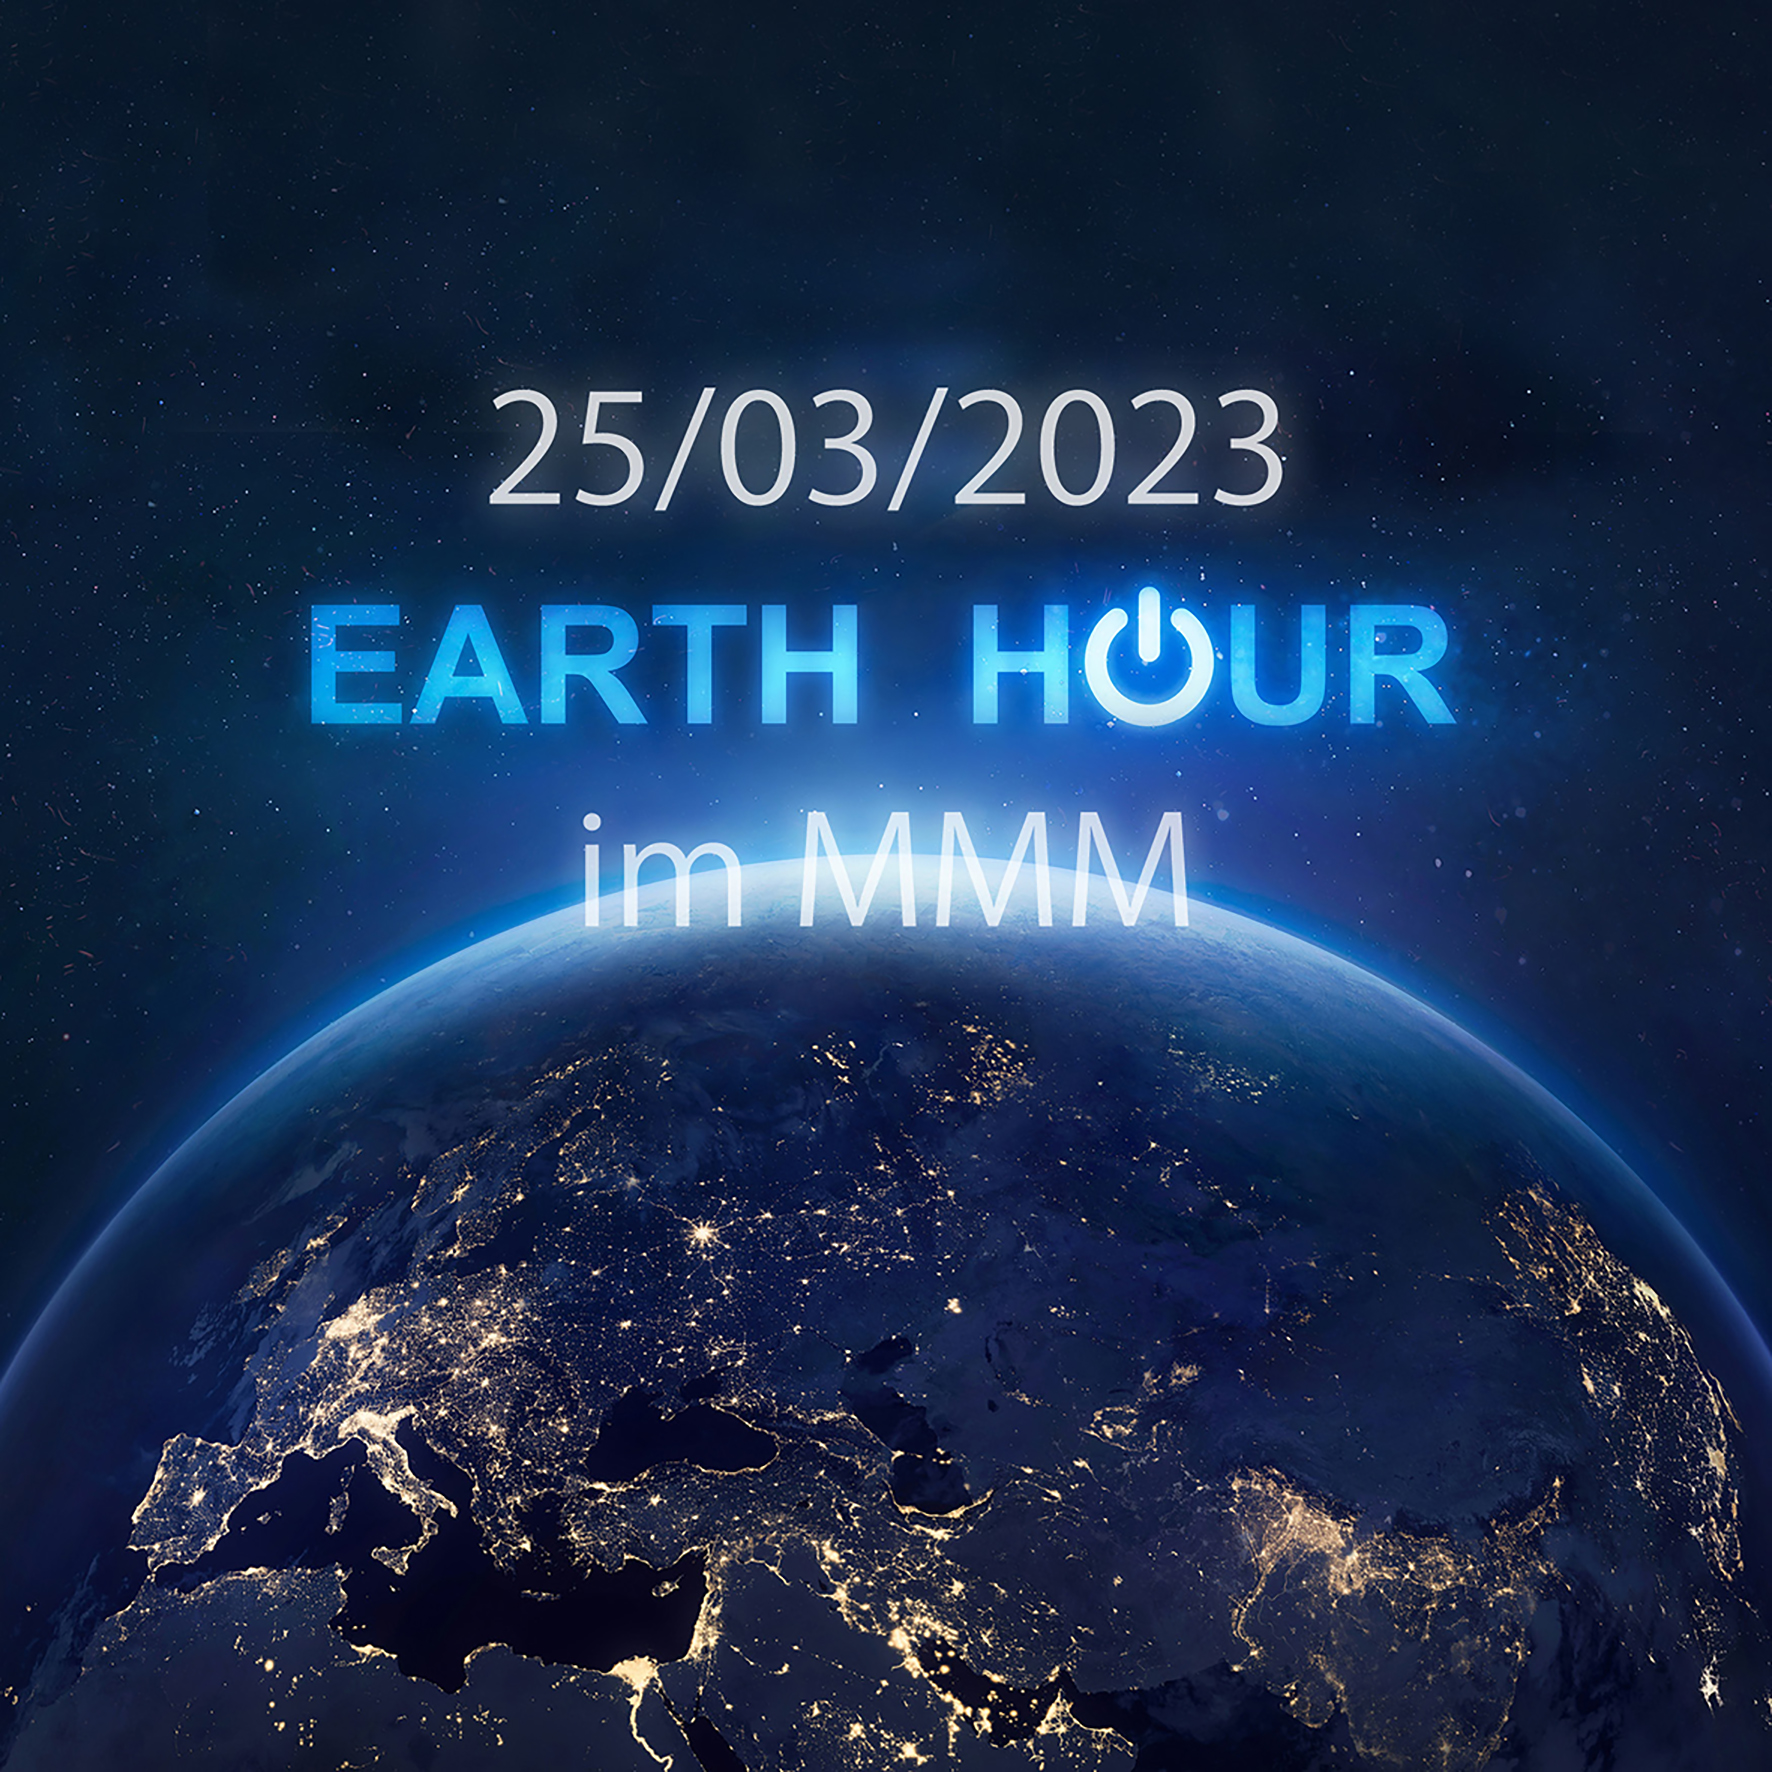 Jetzt anmelden für die Earth Hour 2023 im MMM!